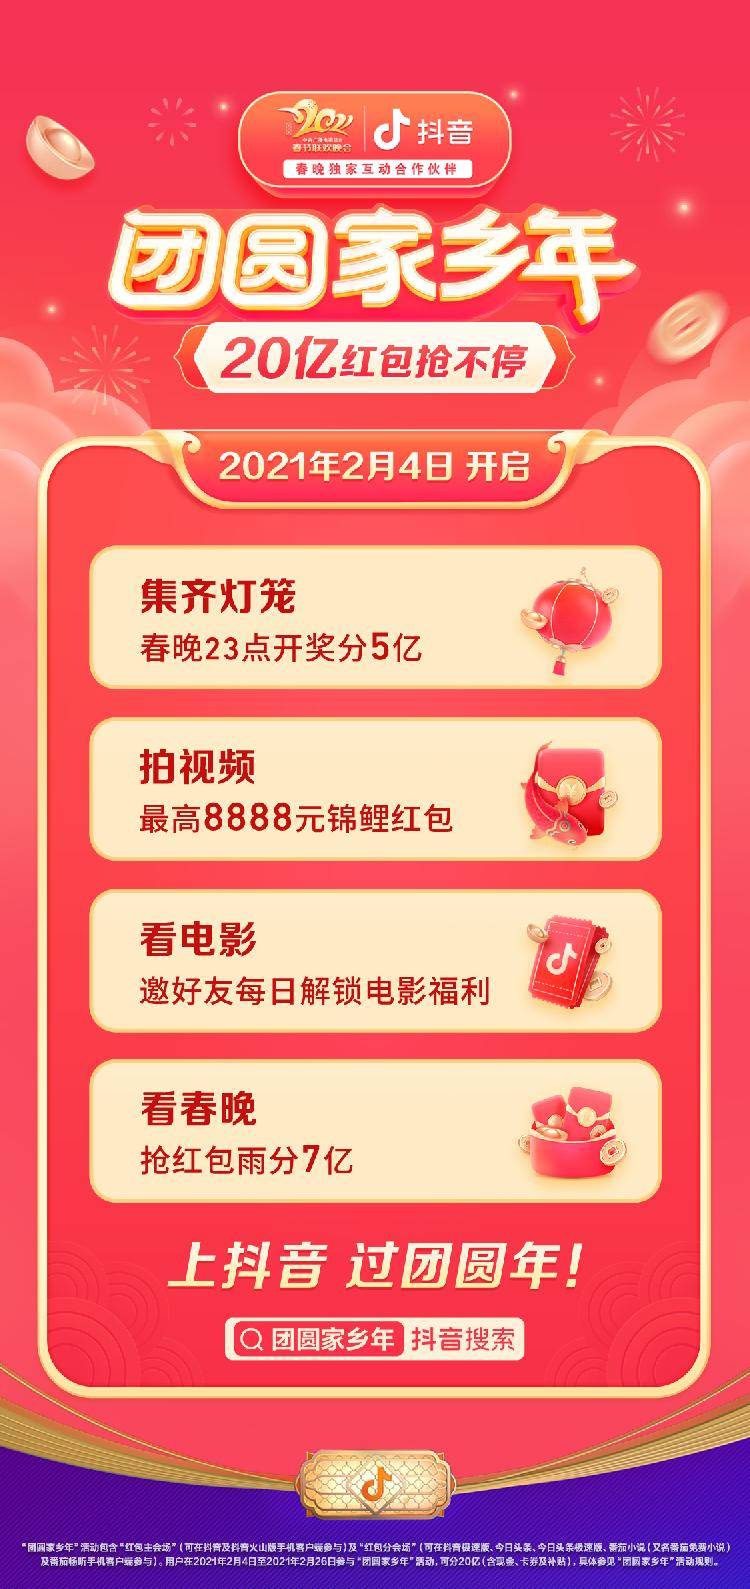 抖音春节活动上线亿元红包